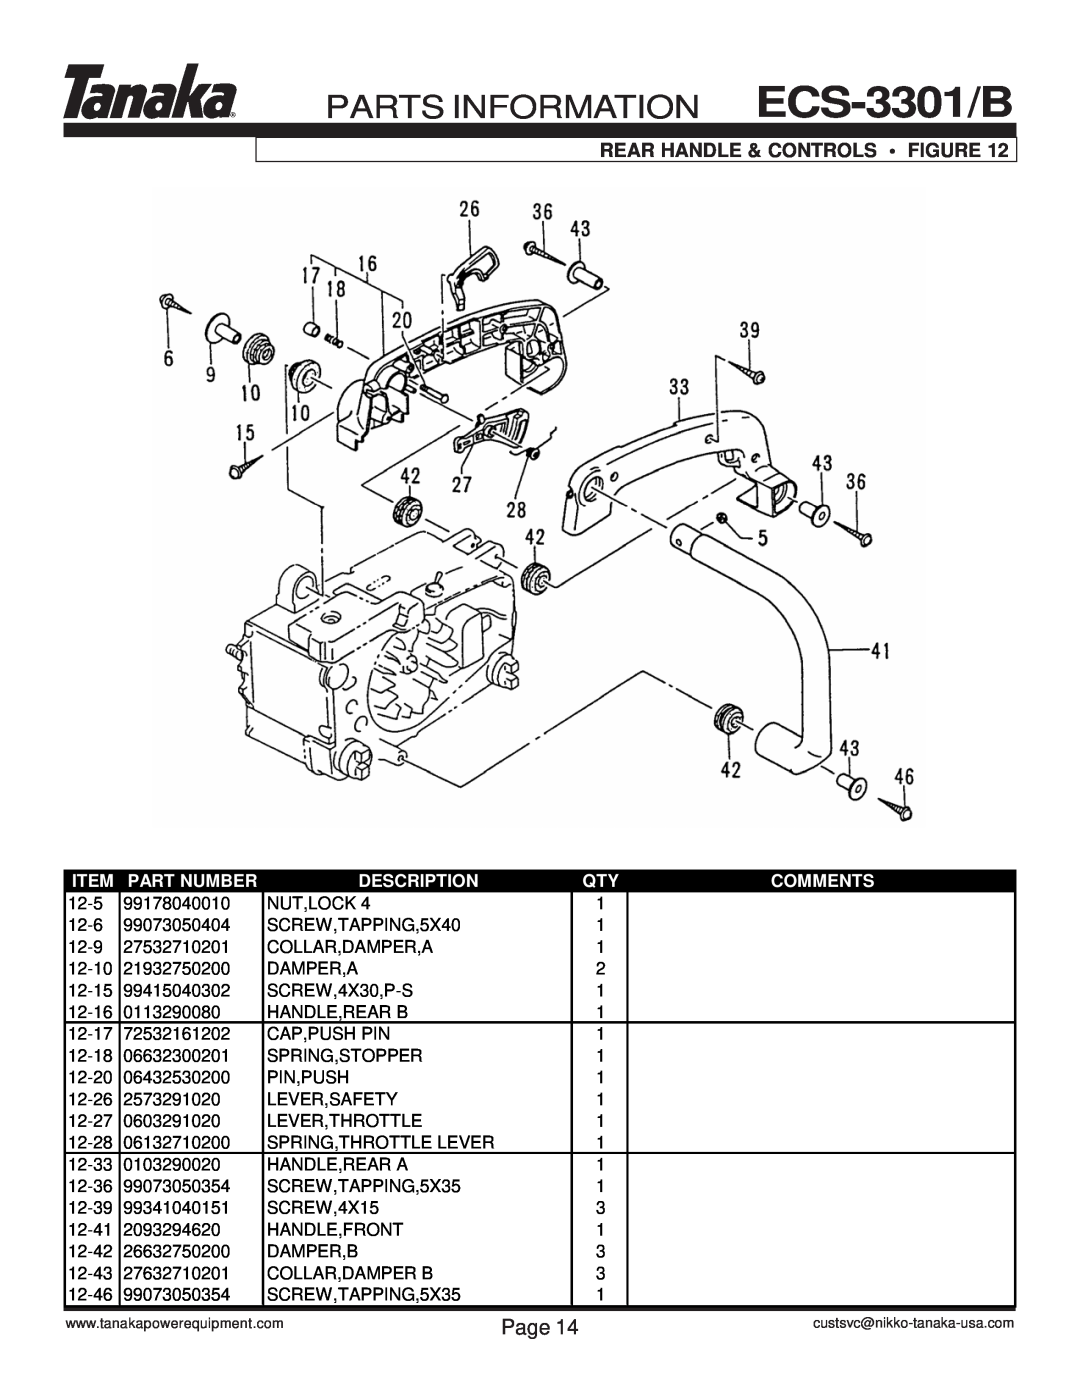 Tanaka Rear Handle & Controls Figure, PARTS INFORMATION ECS-3301/B, Page, Item, Part Number, Description, Comments 